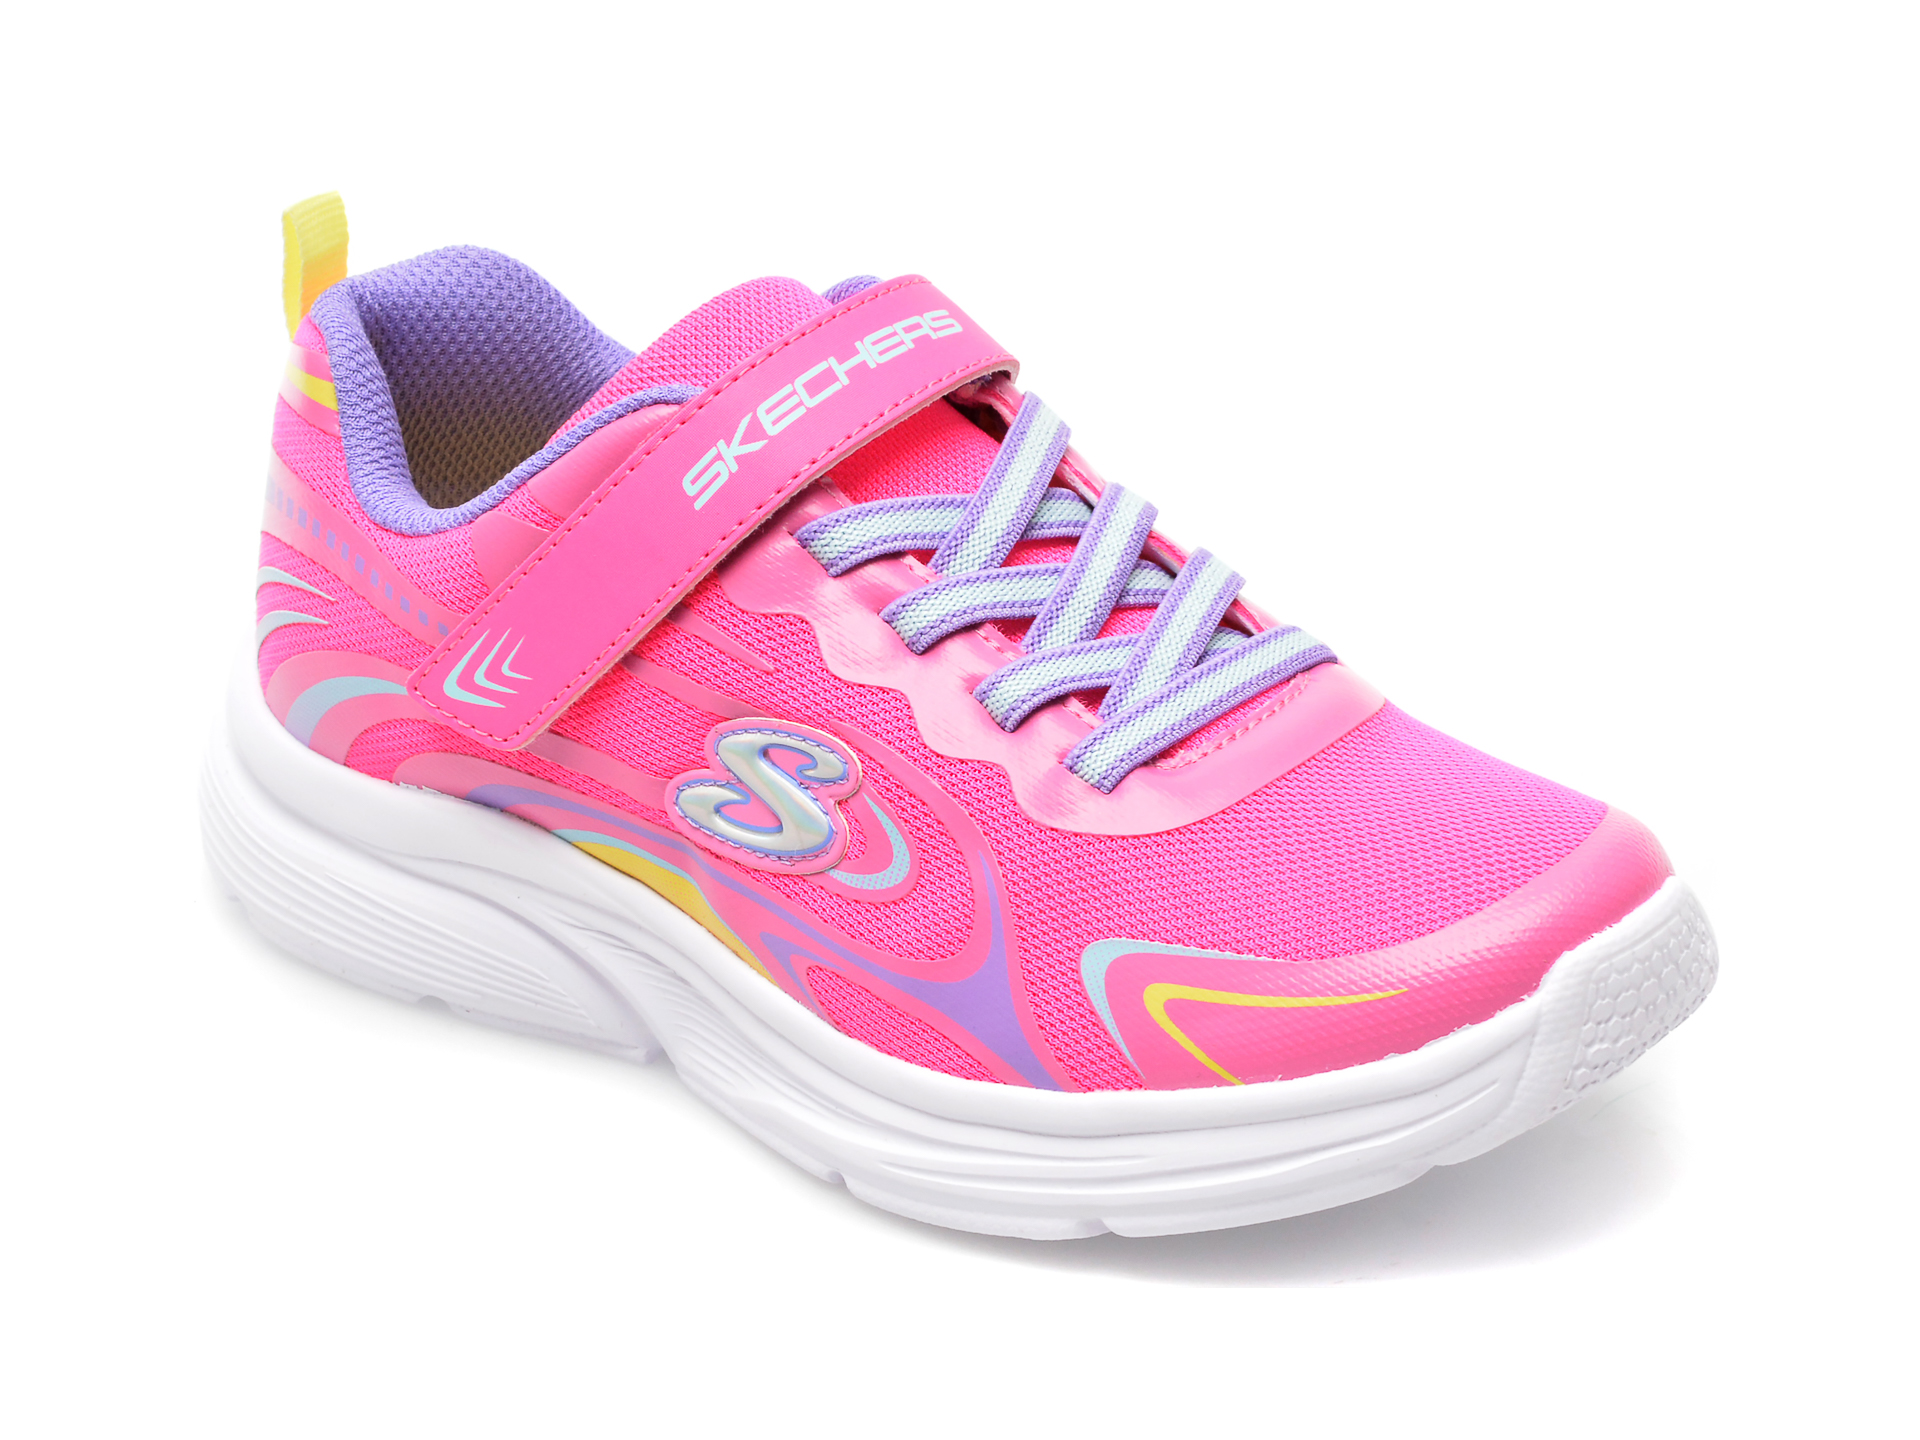 Pantofi SKECHERS roz, WAVY LITES, din material textil /copii/incaltaminte imagine super redus 2022